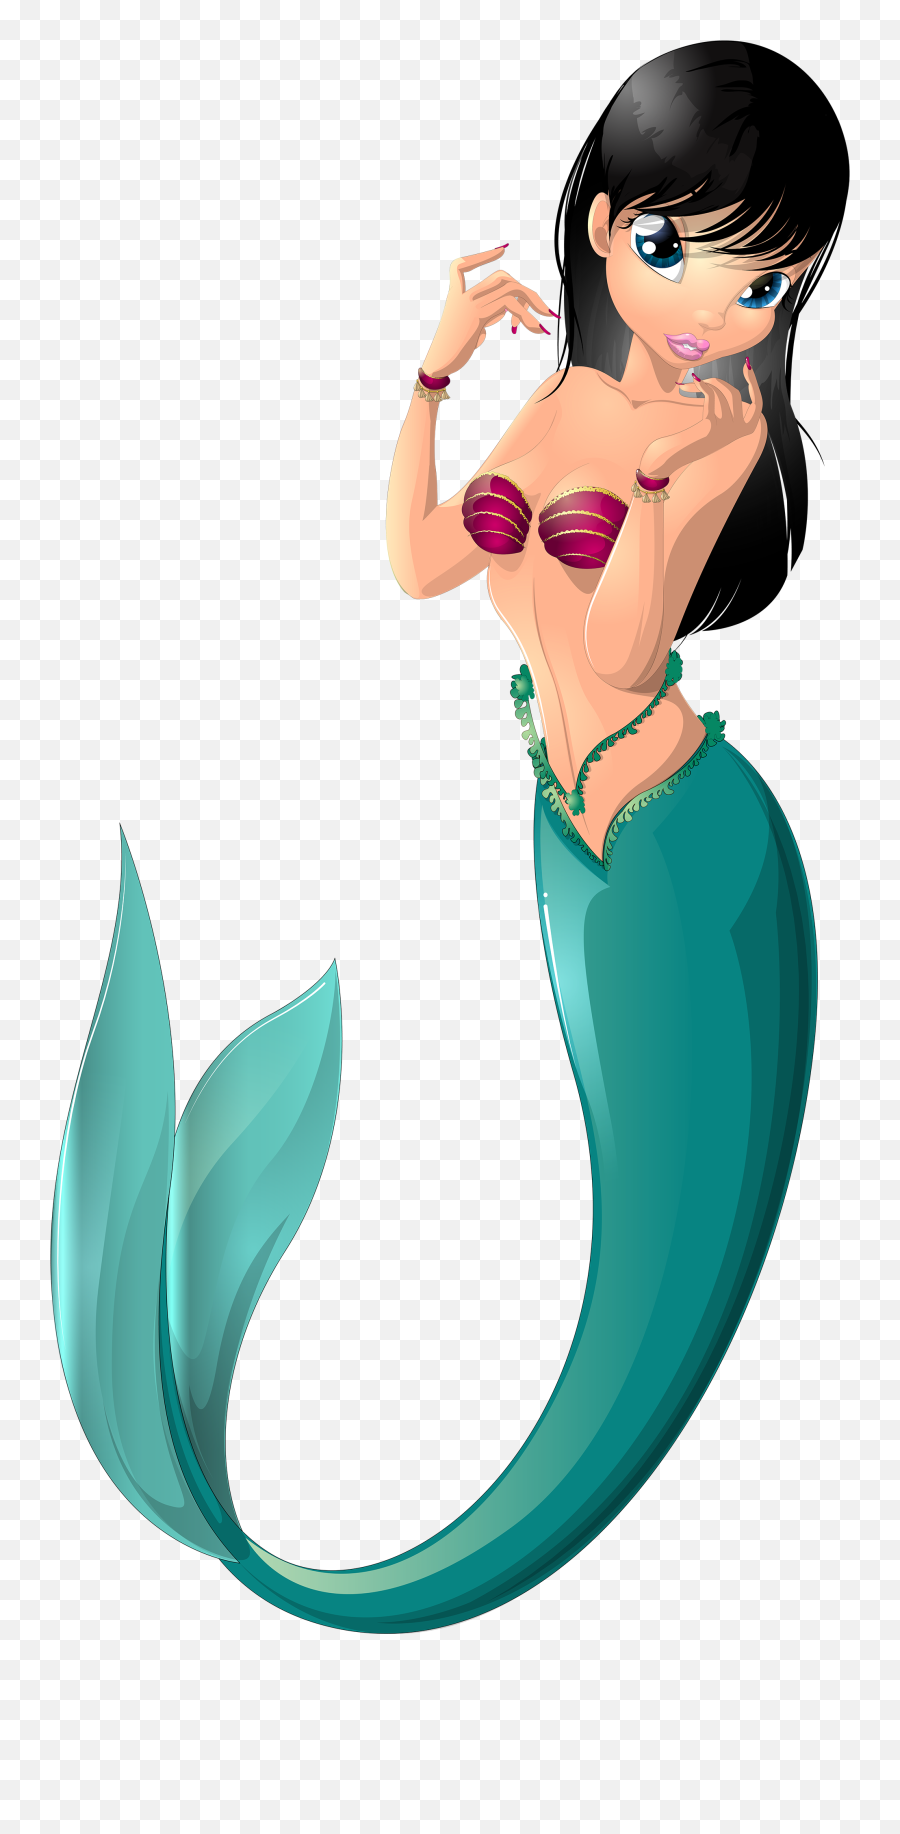 Clipart Free Clip Art Images Image 4 - Mermaid Cartoon Png Emoji,Little Mermaid Emoji